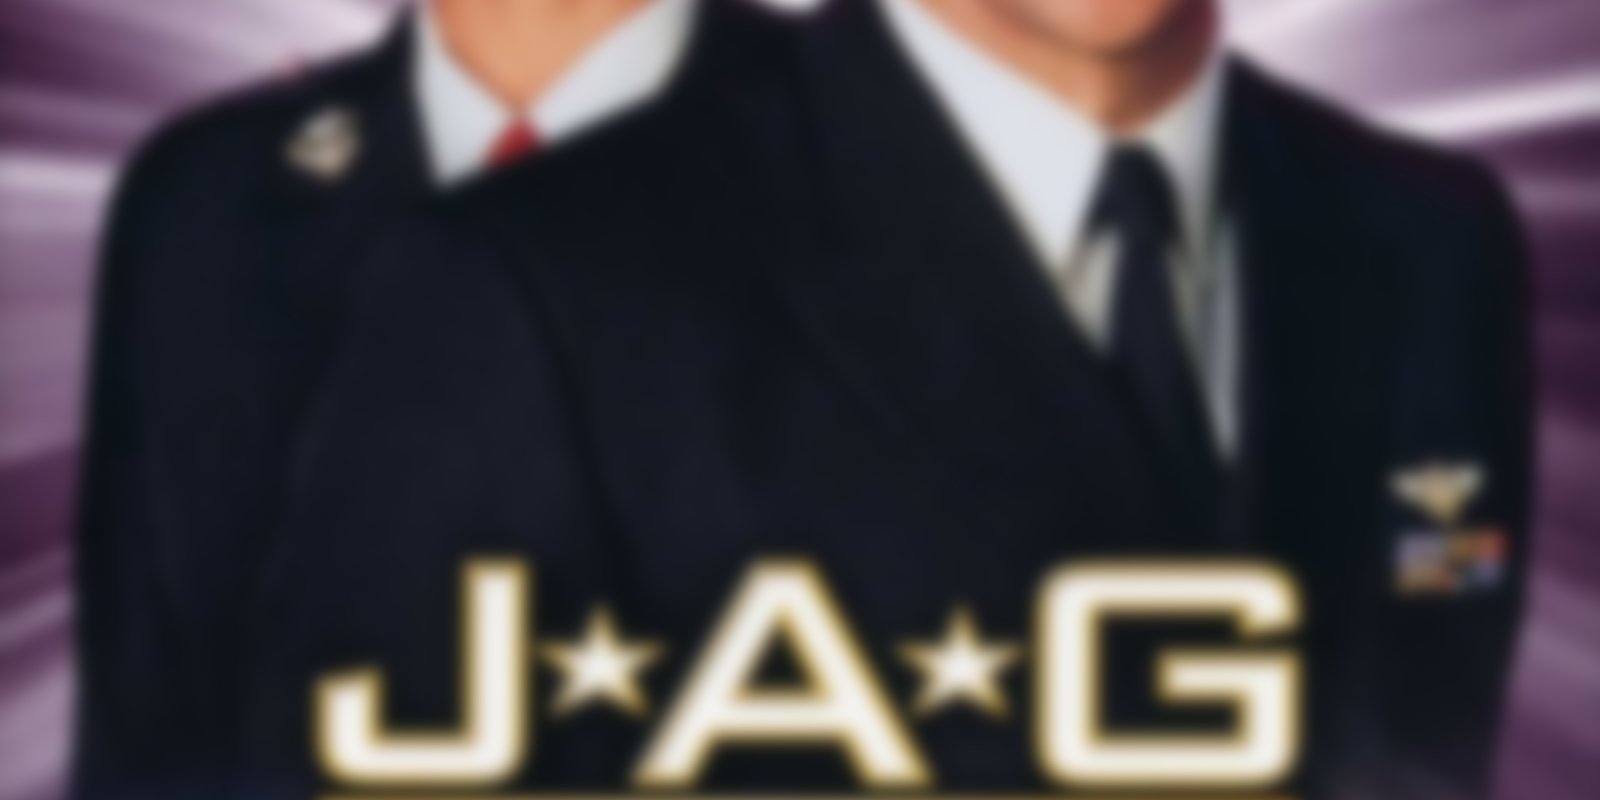 J.A.G. - Im Auftrag der Ehre - Staffel 8